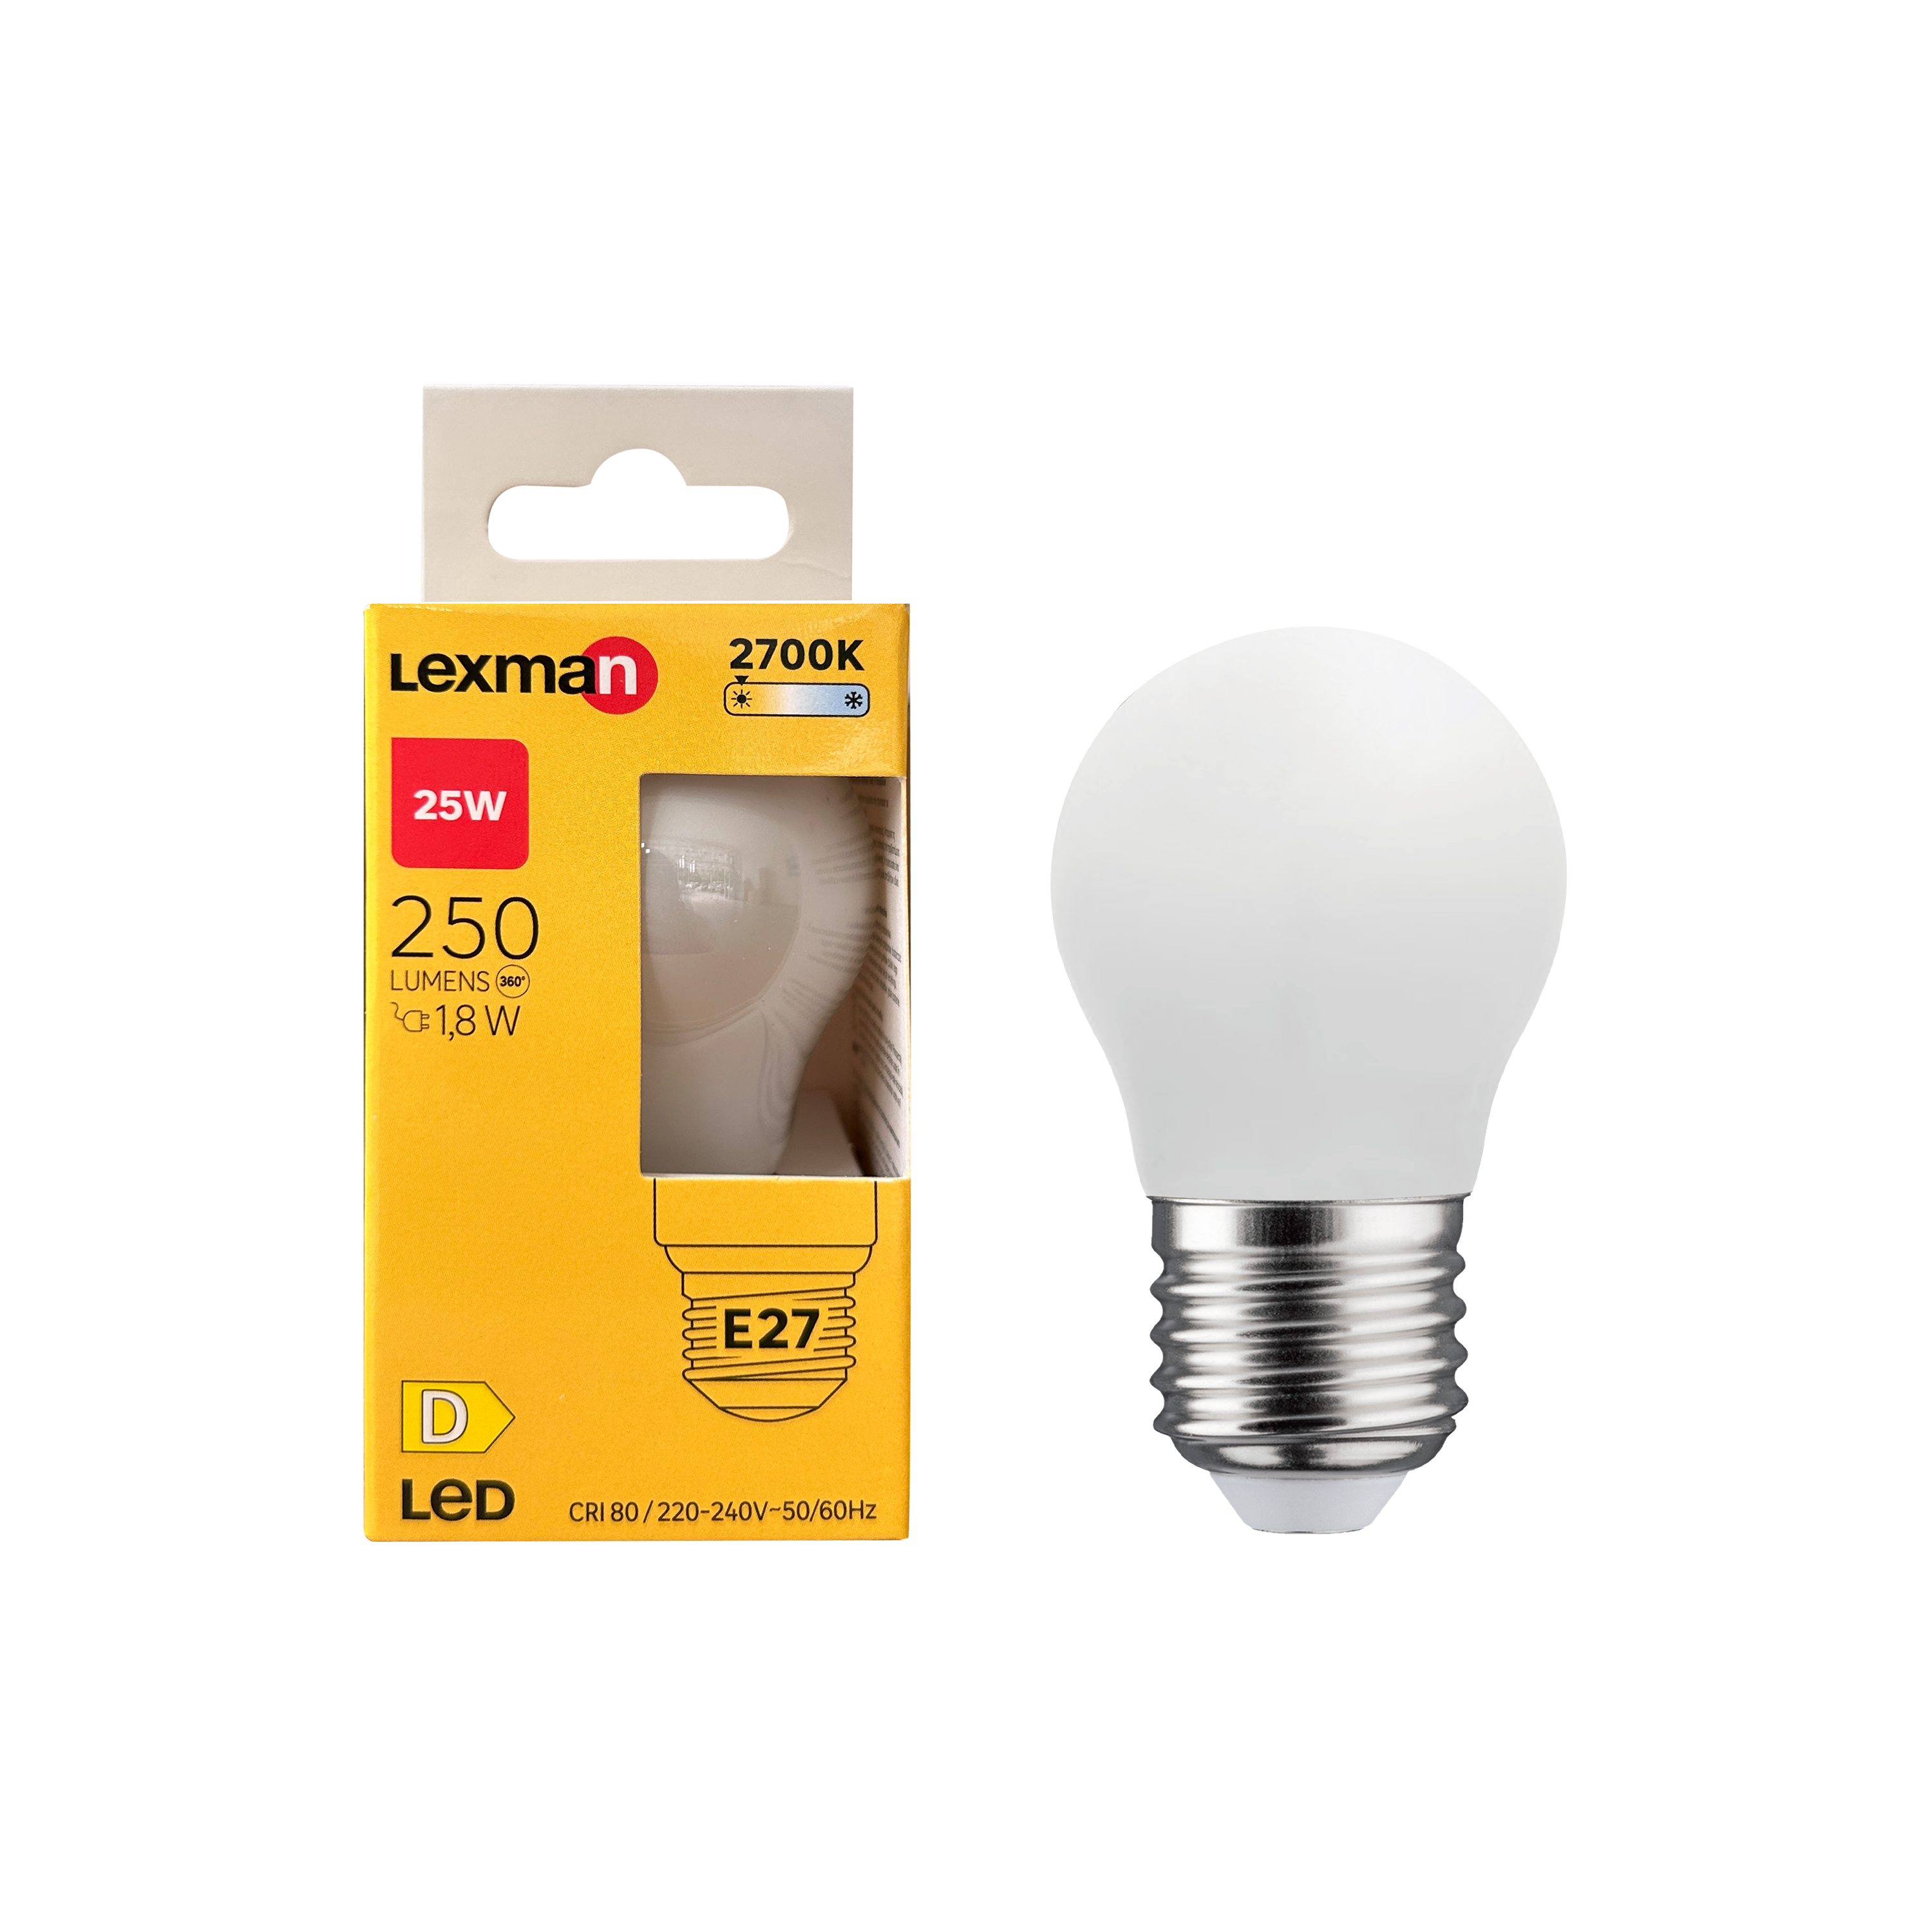 LnD I Ampoule led satinée E14 250lm, 25 W (Eq. Inc.), blanc chaud